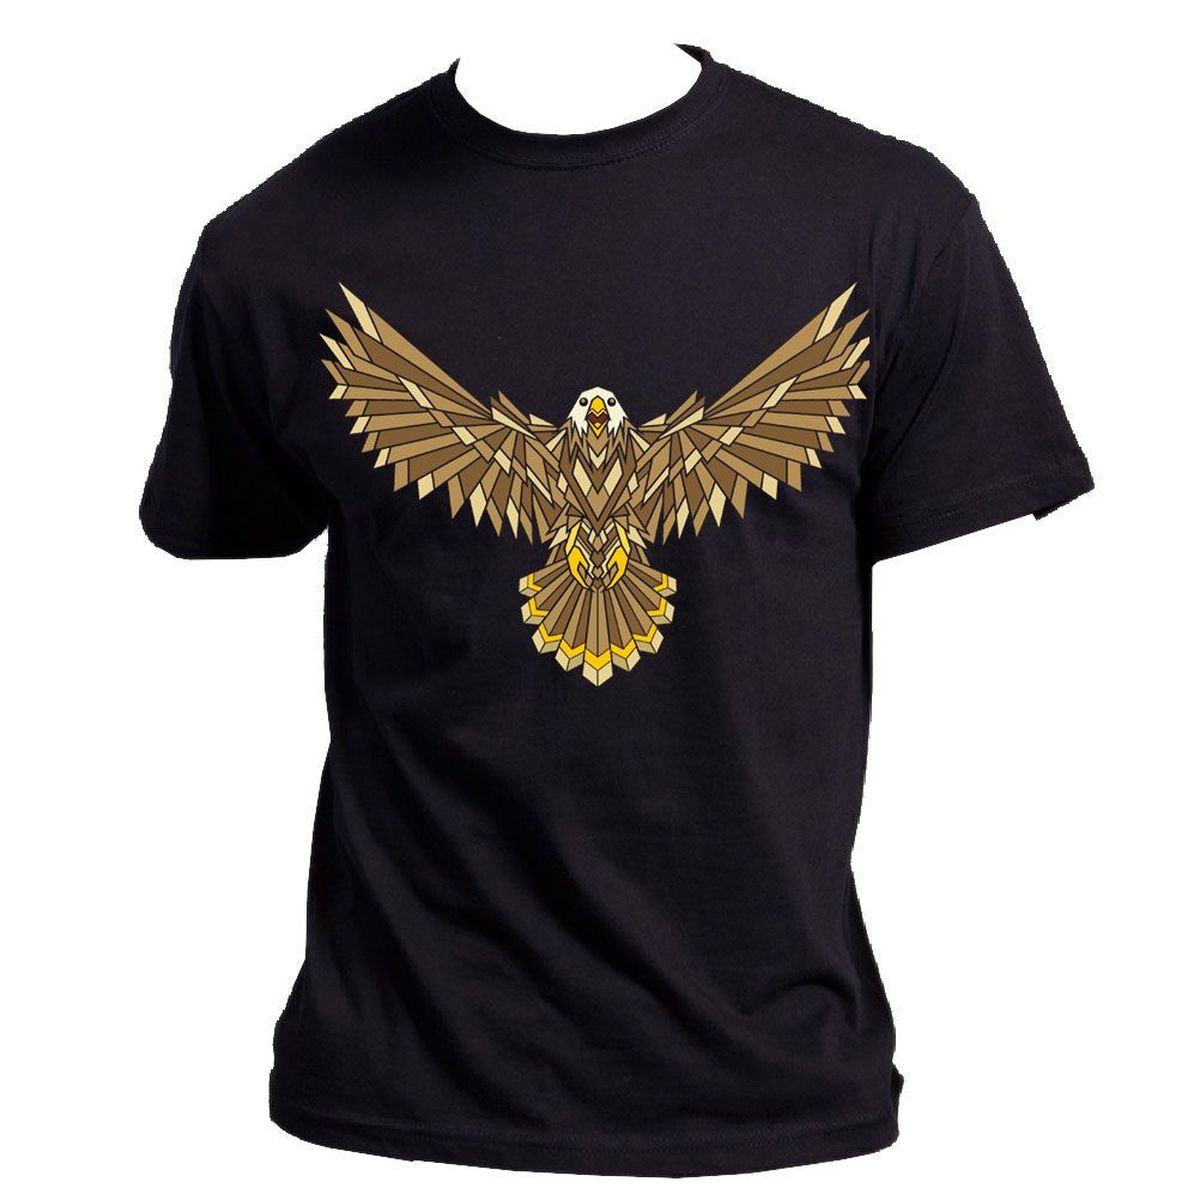 Eagle Black Tee Shirt